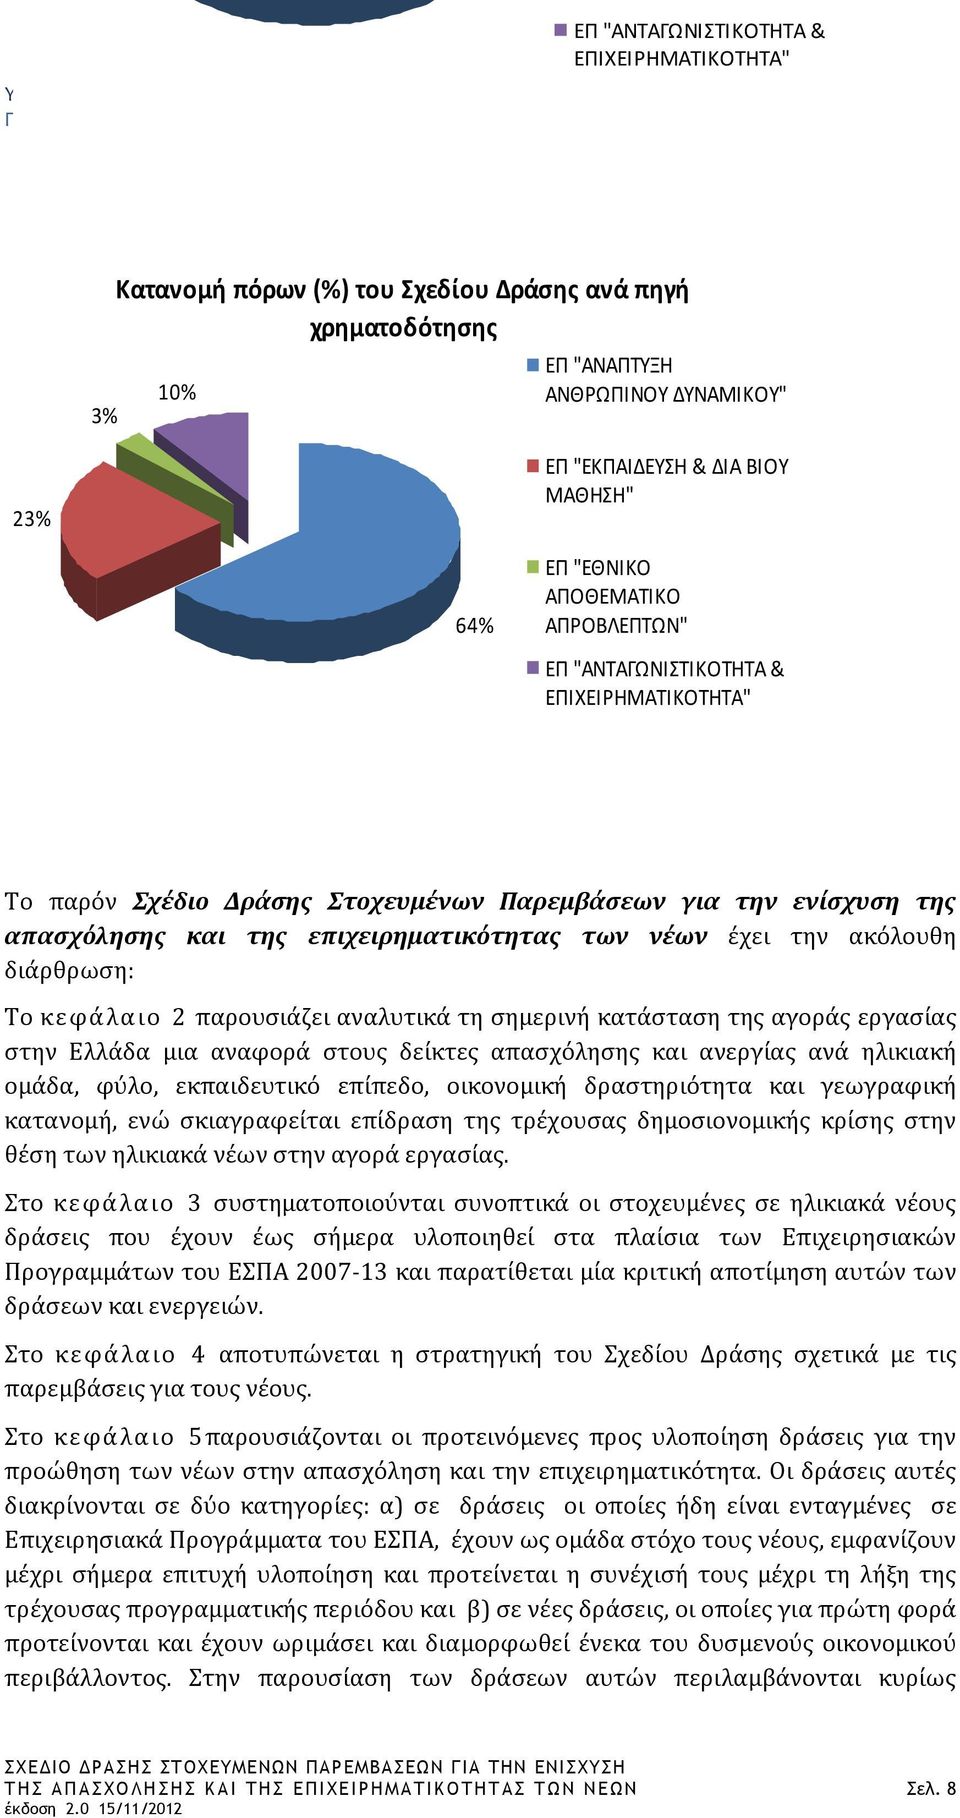 την ακόλουθη διάρθρωση: Το κεφάλαιο 2 παρουσιάζει αναλυτικά τη σημερινή κατάσταση της αγοράς εργασίας στην Ελλάδα μια αναφορά στους δείκτες απασχόλησης και ανεργίας ανά ηλικιακή ομάδα, φύλο,